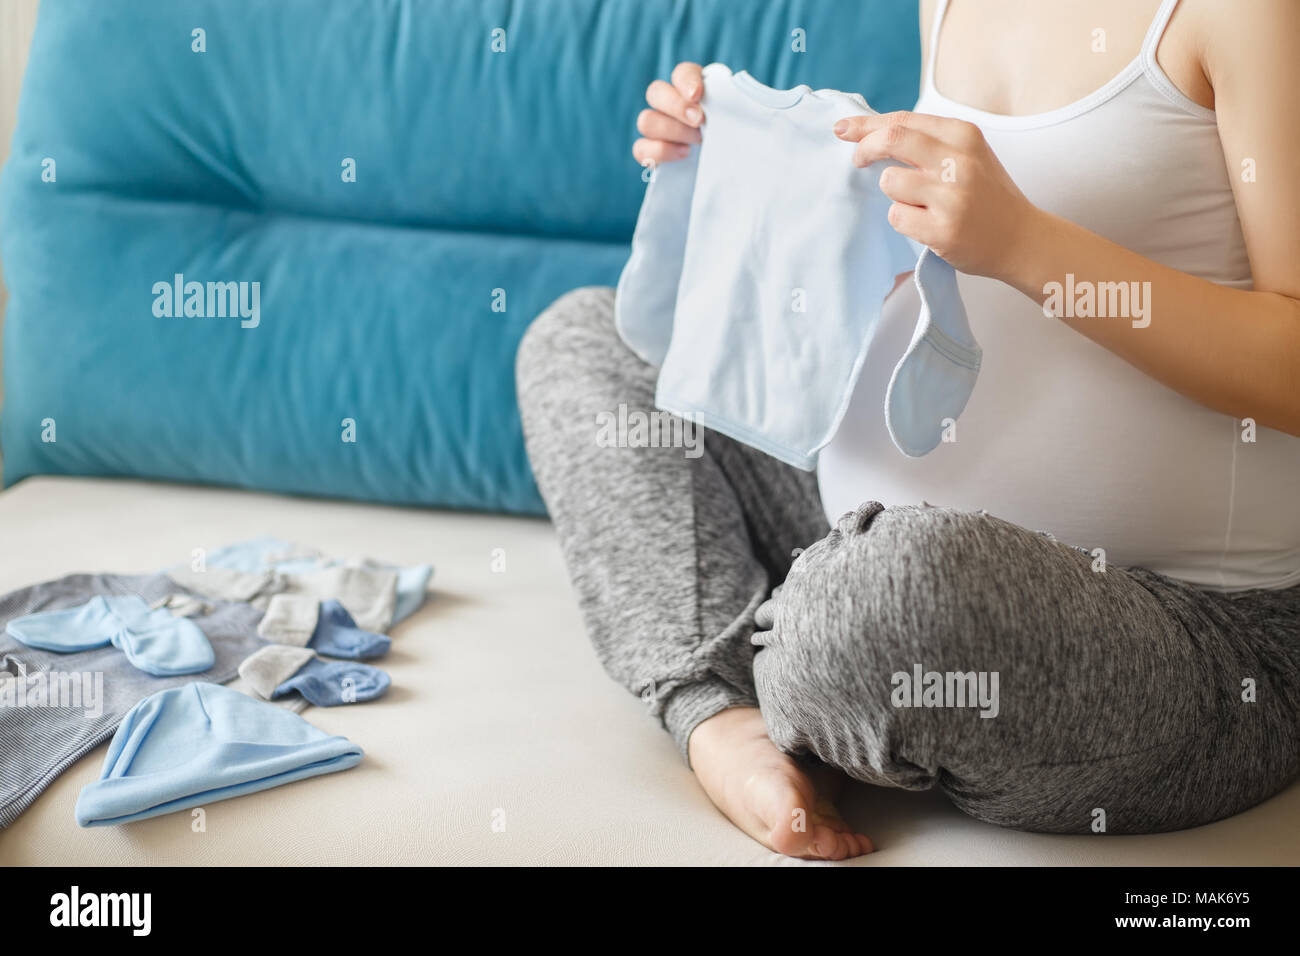 Femme enceinte libre de préparer les vêtements de bébé. Future maman, avec des vêtements pour nouveau-né. La grossesse, les gens, l'attente de bébé concept Banque D'Images